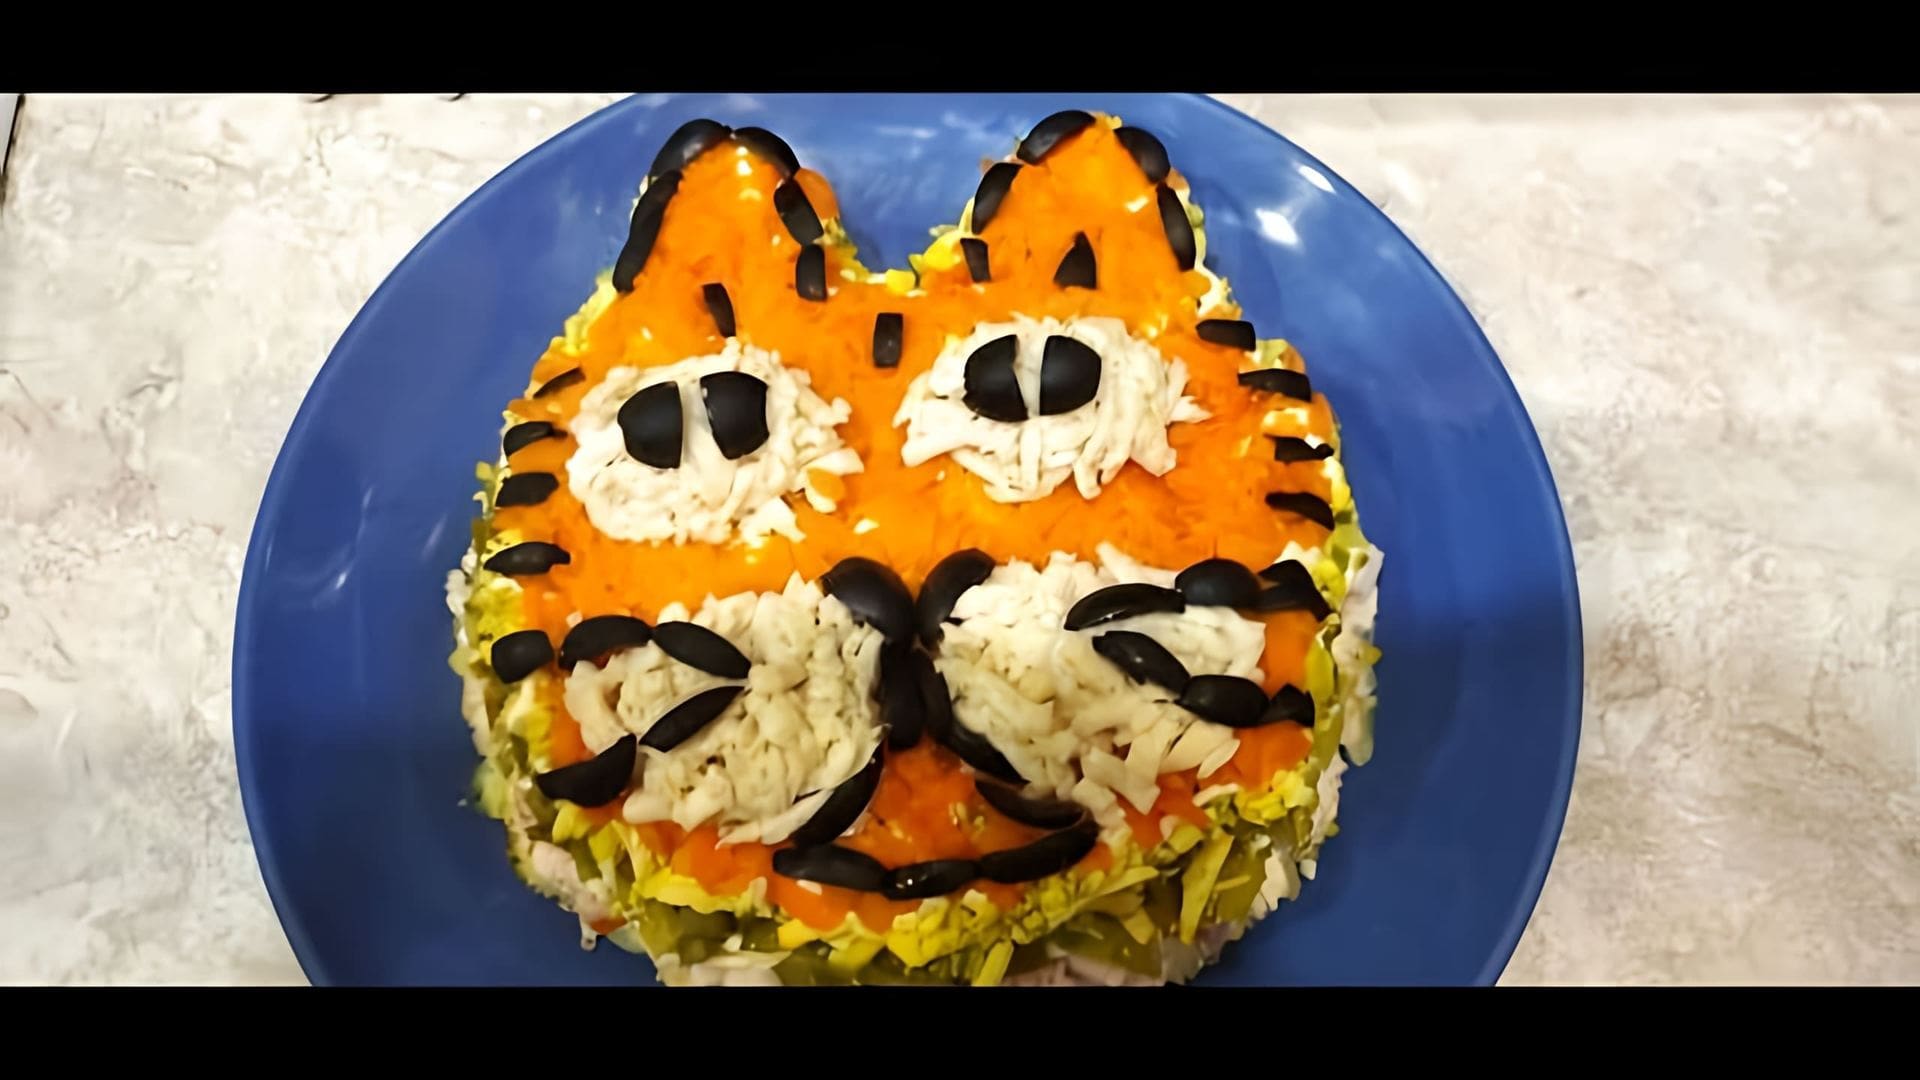 В этом видео демонстрируется процесс приготовления салата "Сытый тигр" на Новый год